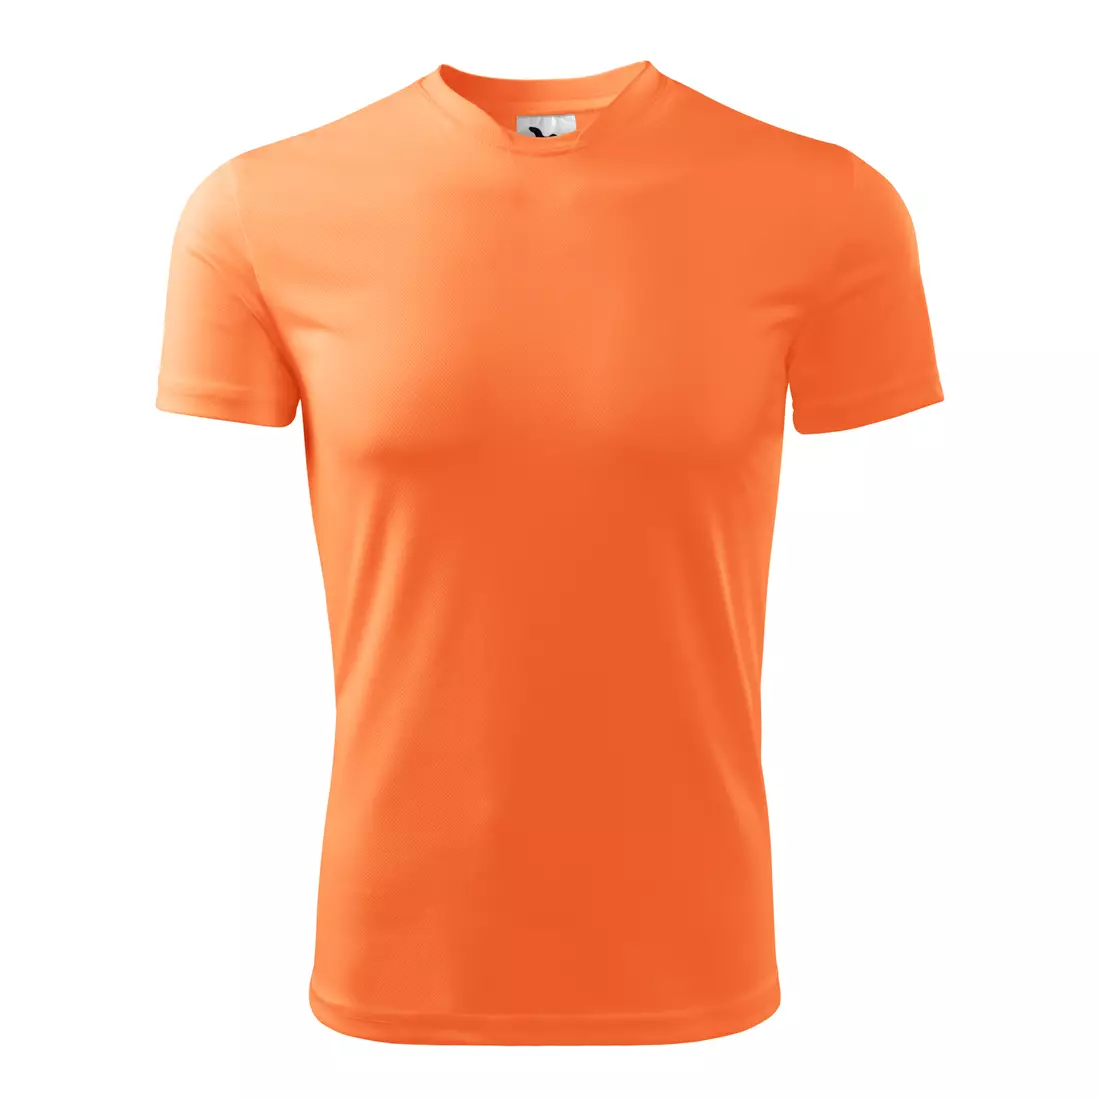 MALFINI FANTASY - męska koszulka sportowa 100% poliester, neon mandarine 1248813-124